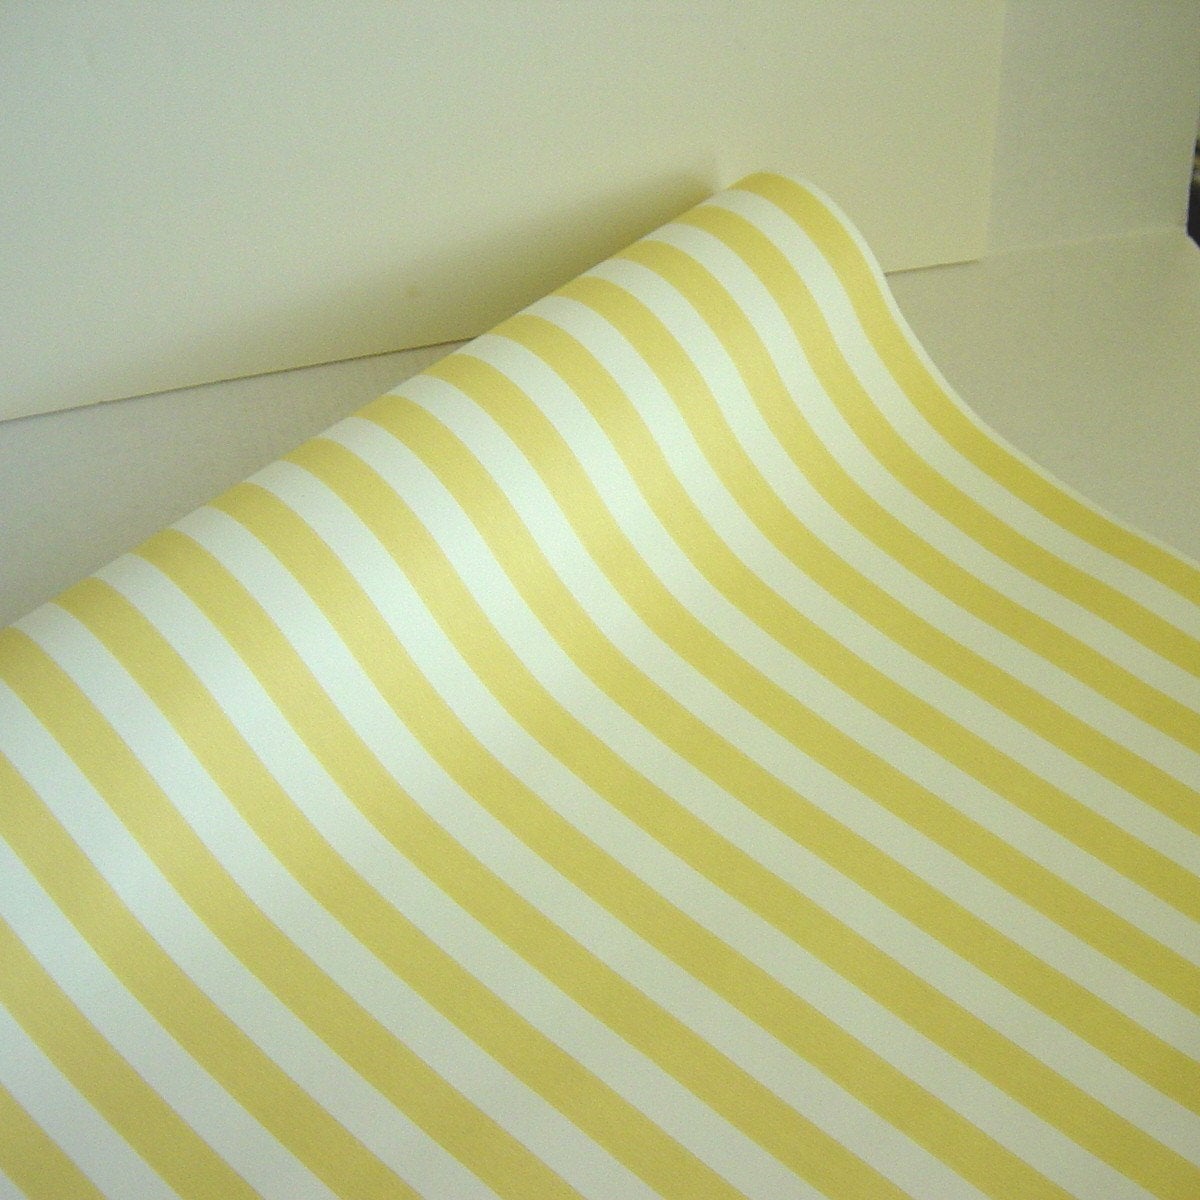 papier peint jaune et blanc,jaune,textile,ligne,drap de lit,linge de maison